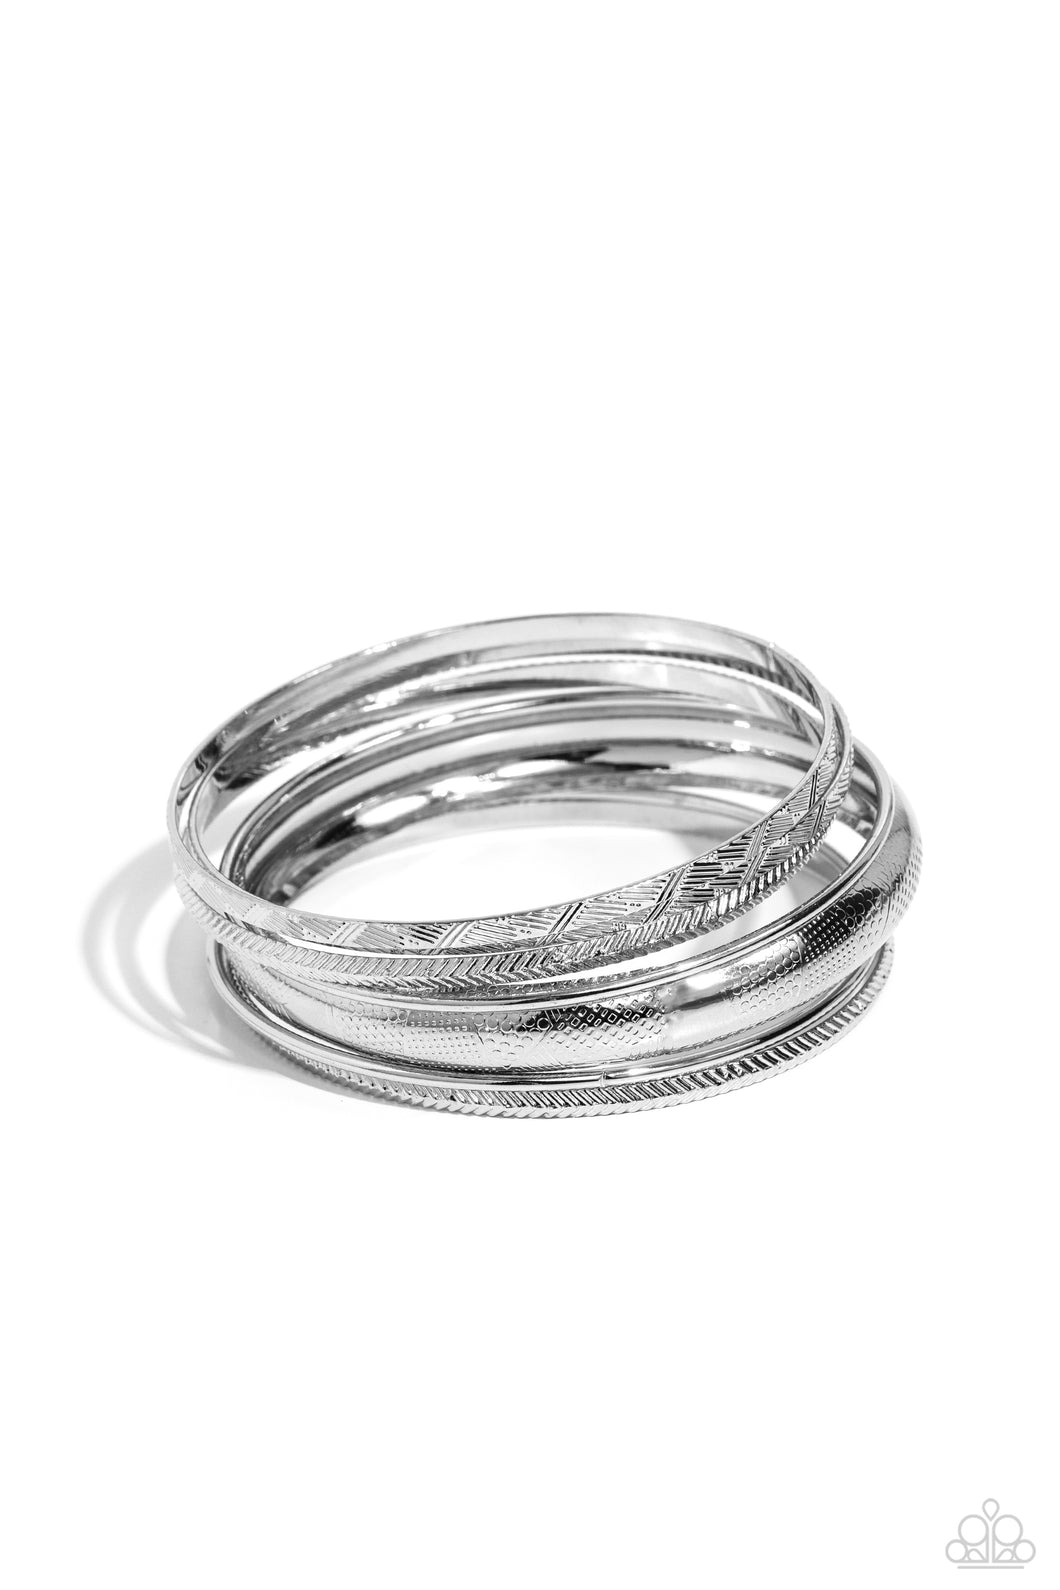 Stackable Stunner - Silver Bangle Bracelet